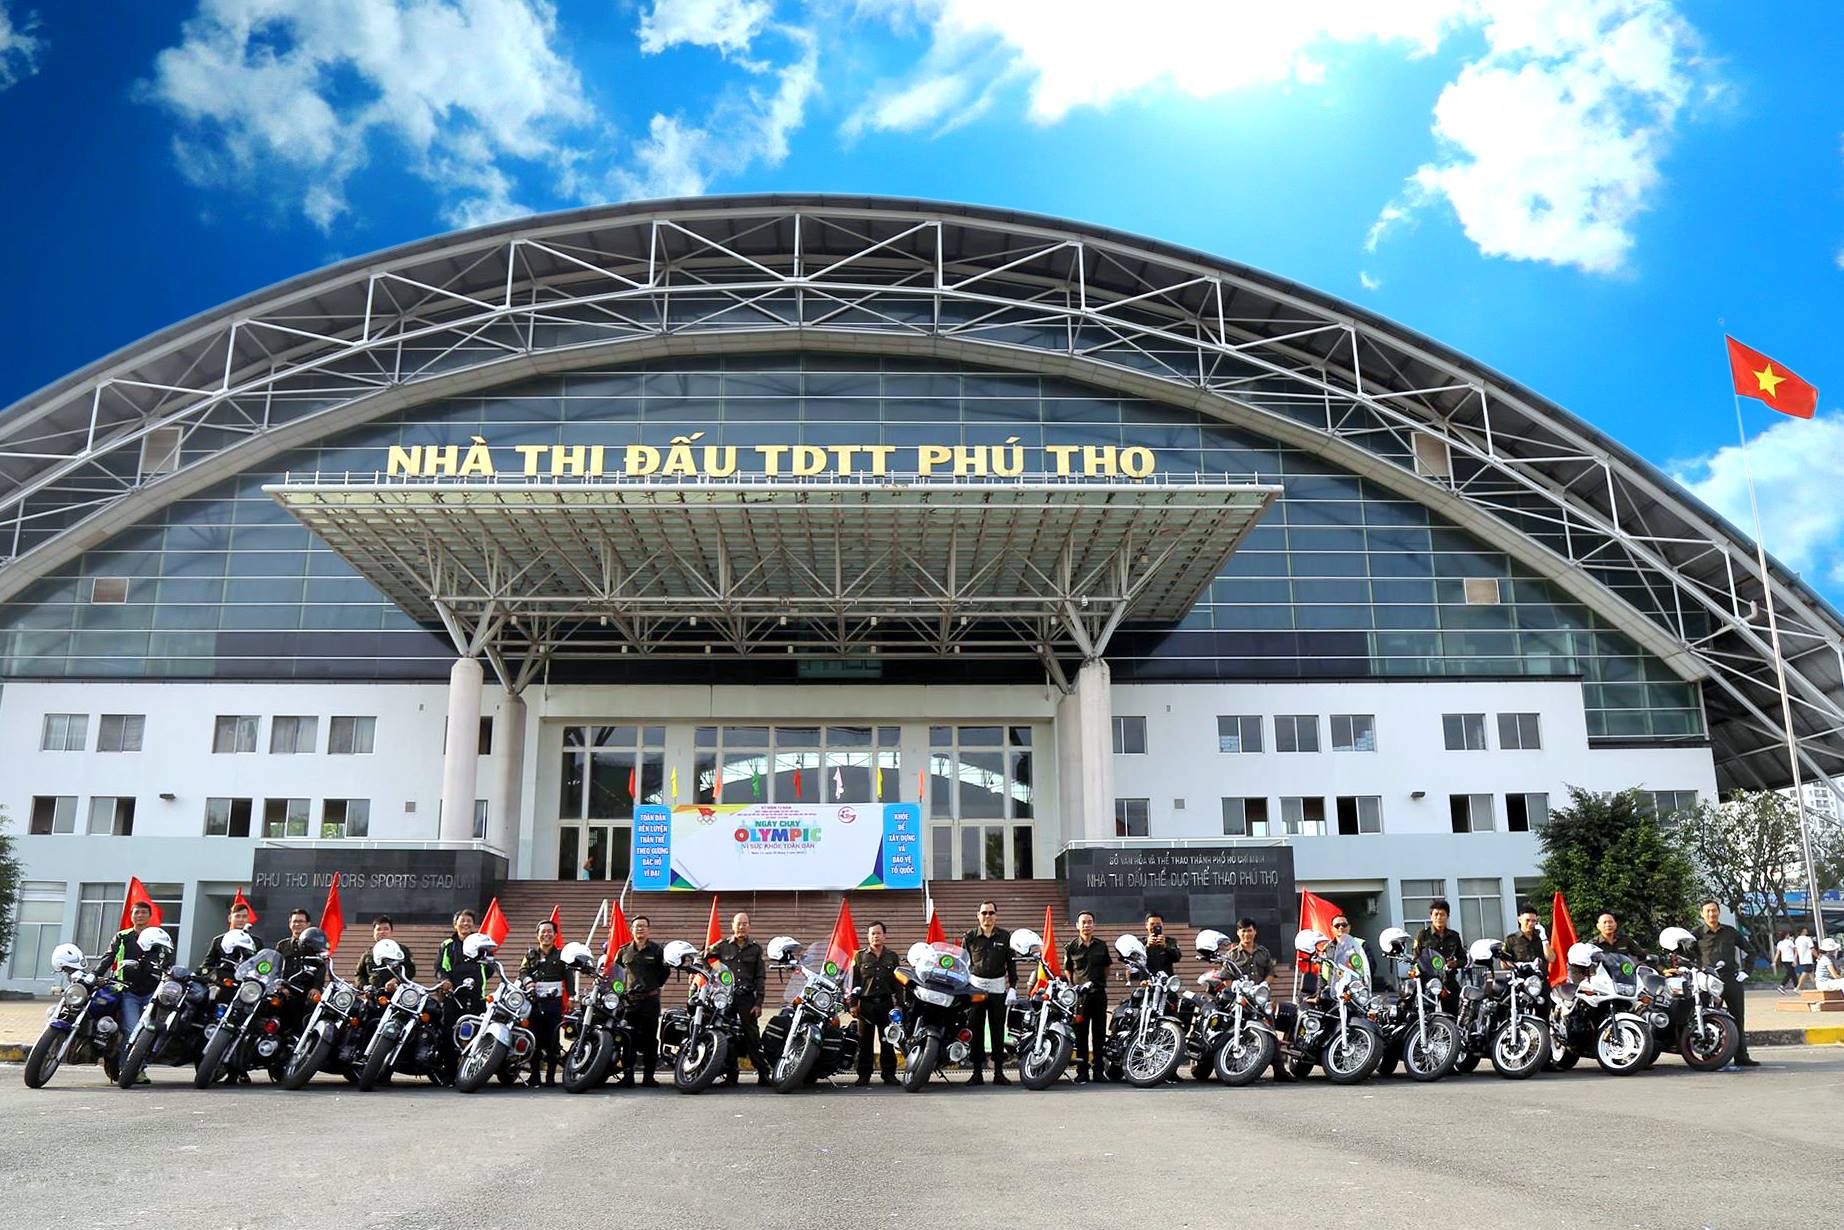 Địa điểm diễn ra triển lãm hot nhất TP HCM - Nhà thi đấu thể dục thể thao Phú Thọ